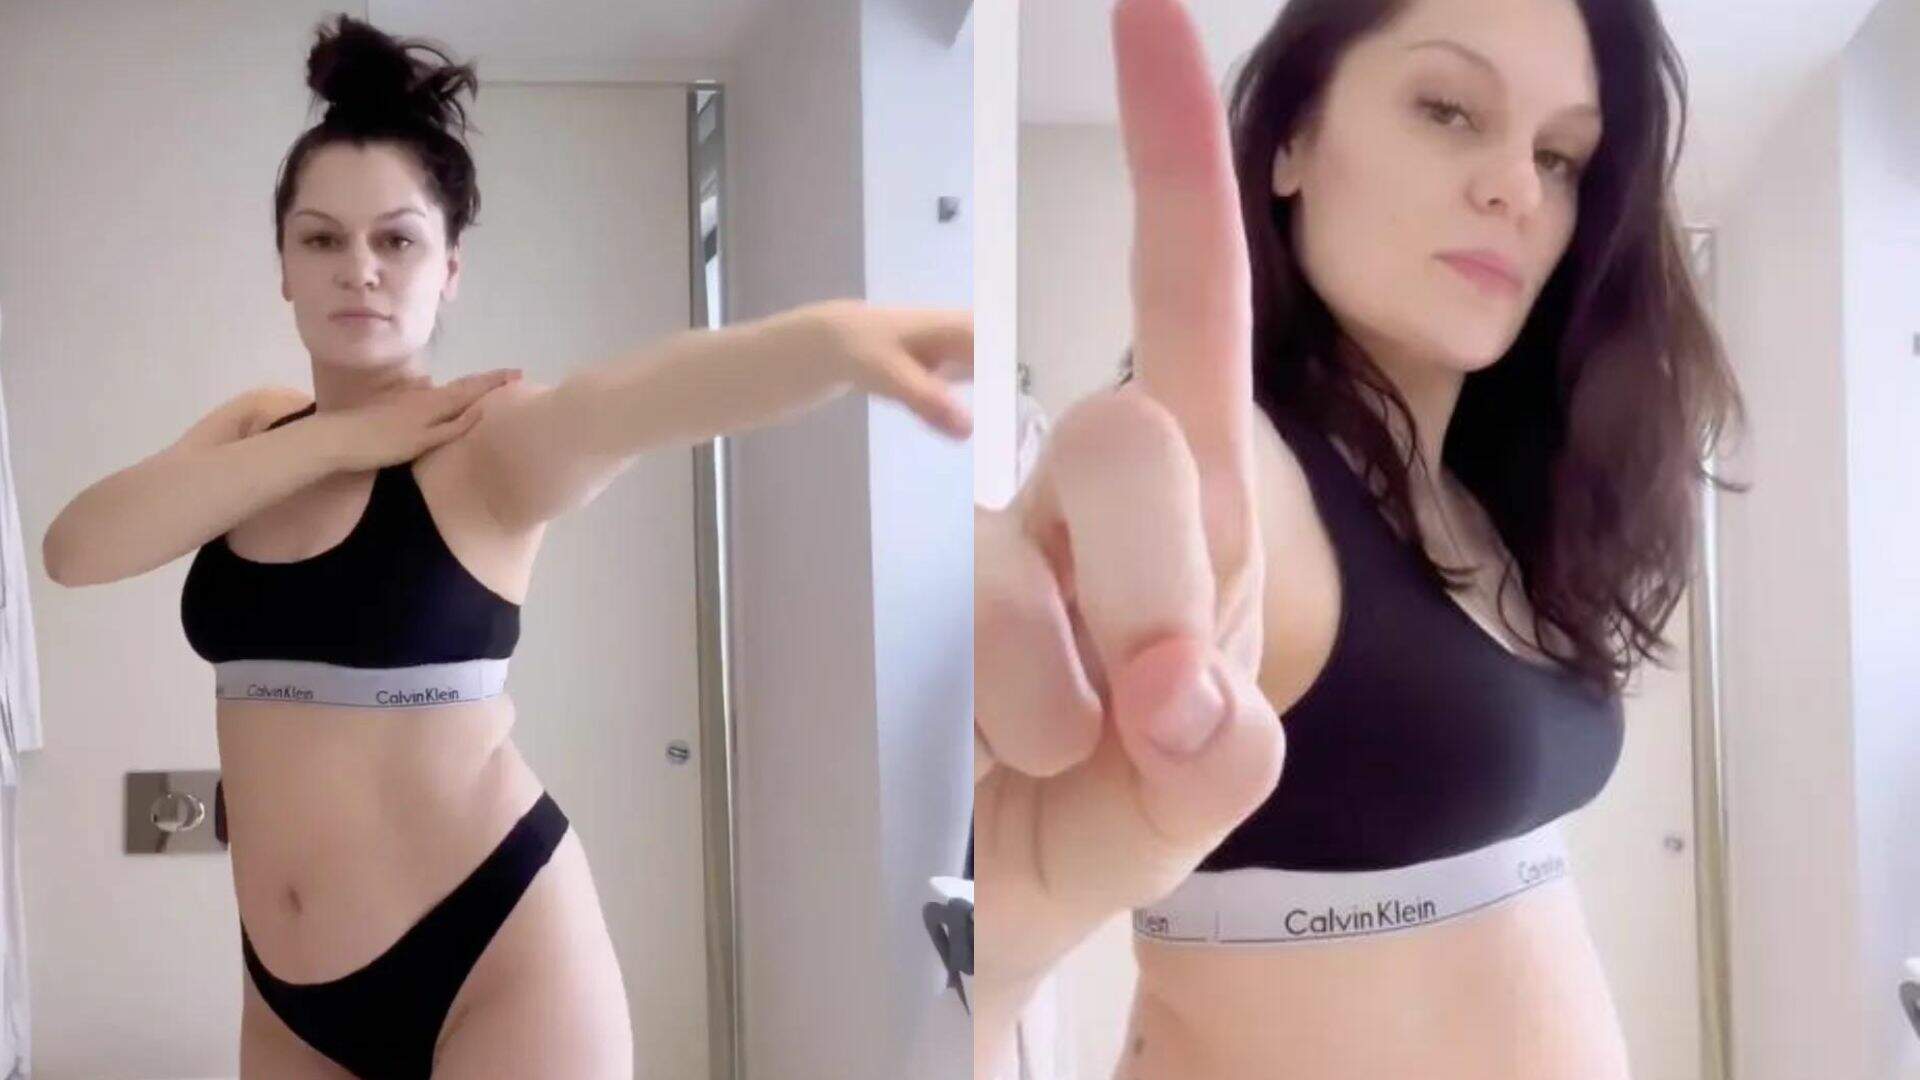 Jessie J enfrenta críticas sobre seu corpo pós-parto e responde à altura; confira! - Metropolitana FM